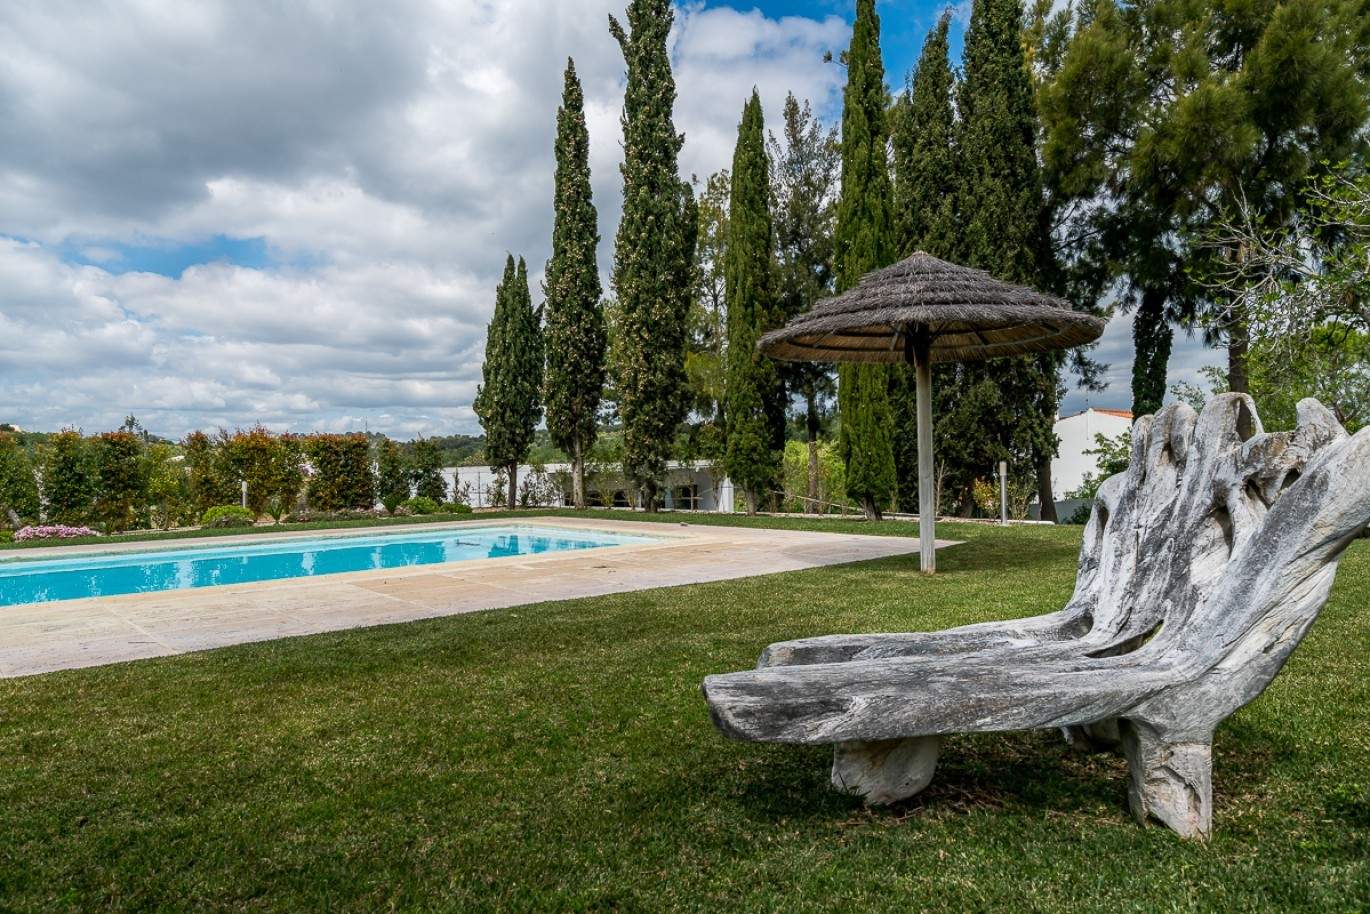 Venda de moradia de alto padrão com piscina, Silves, Algarve, Portugal_77348